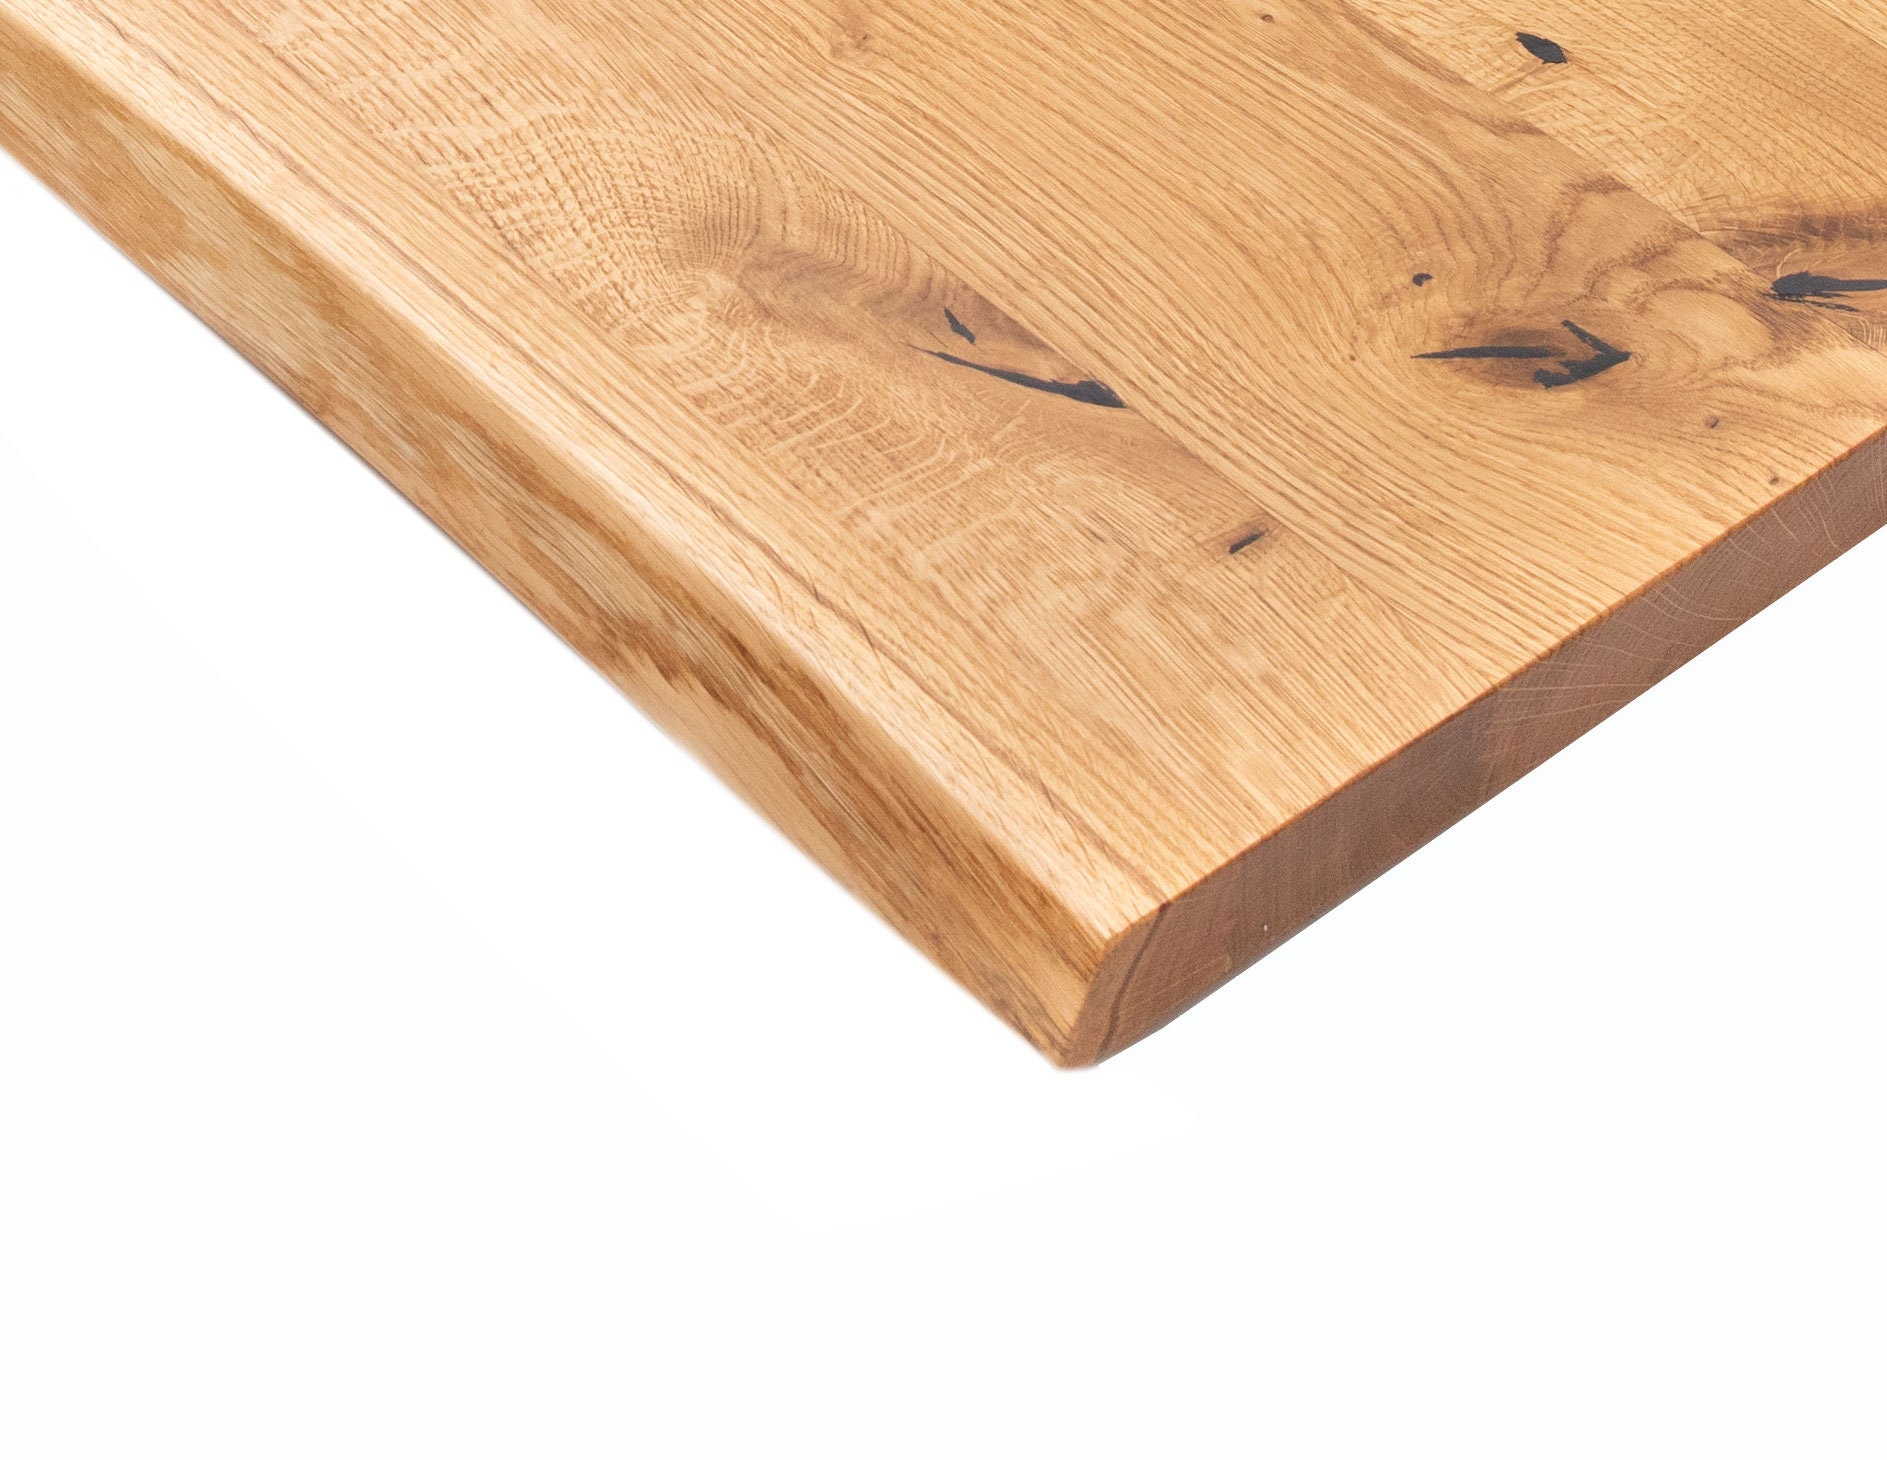 30cm L30-240cm Wooden Plate Table Top Oak Plate Oak Solid Tree Edge Engl. 